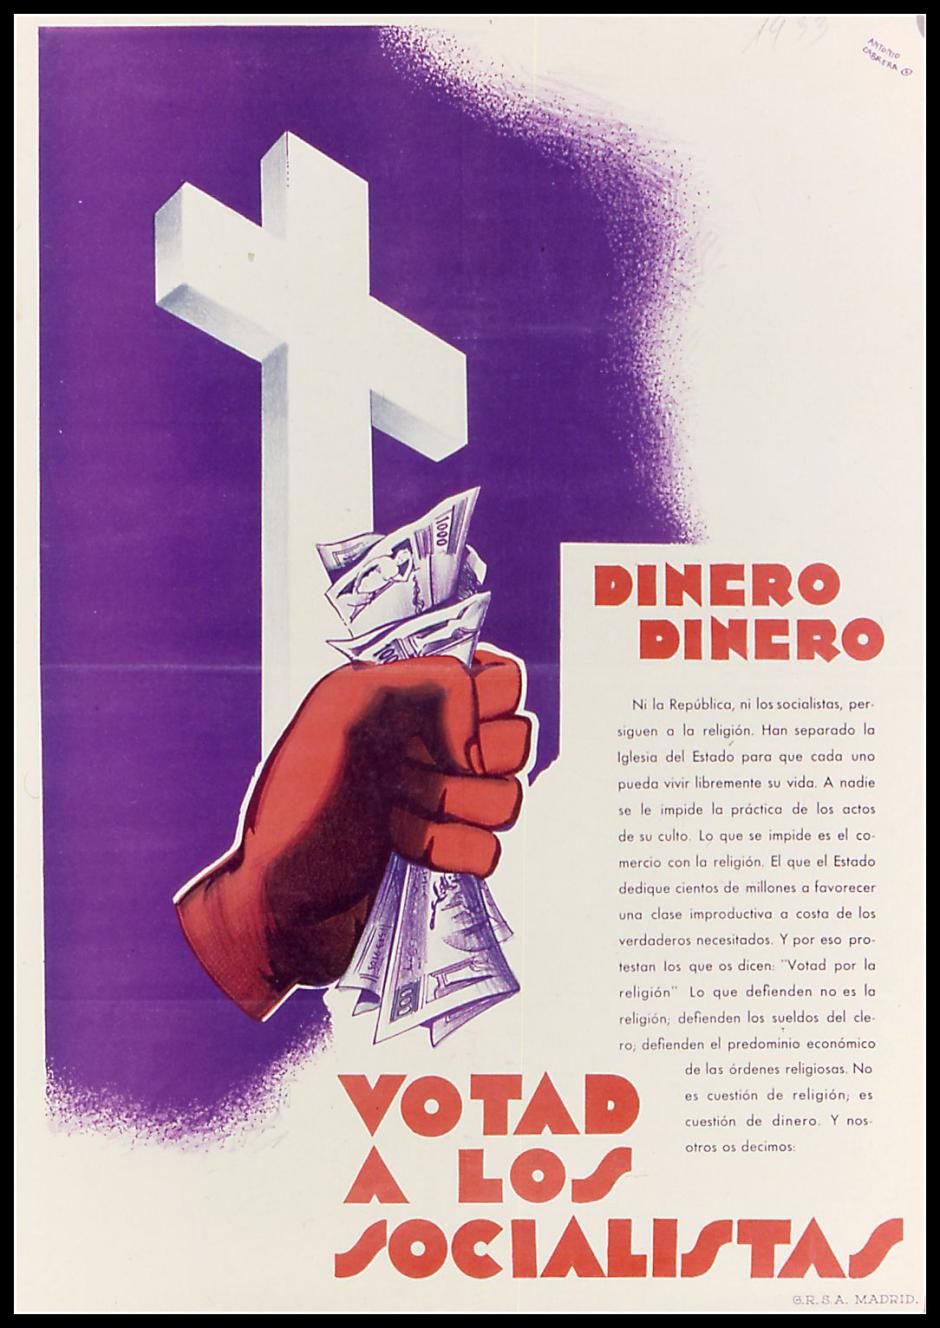 Cartel anticlerical del socialismo en la II República